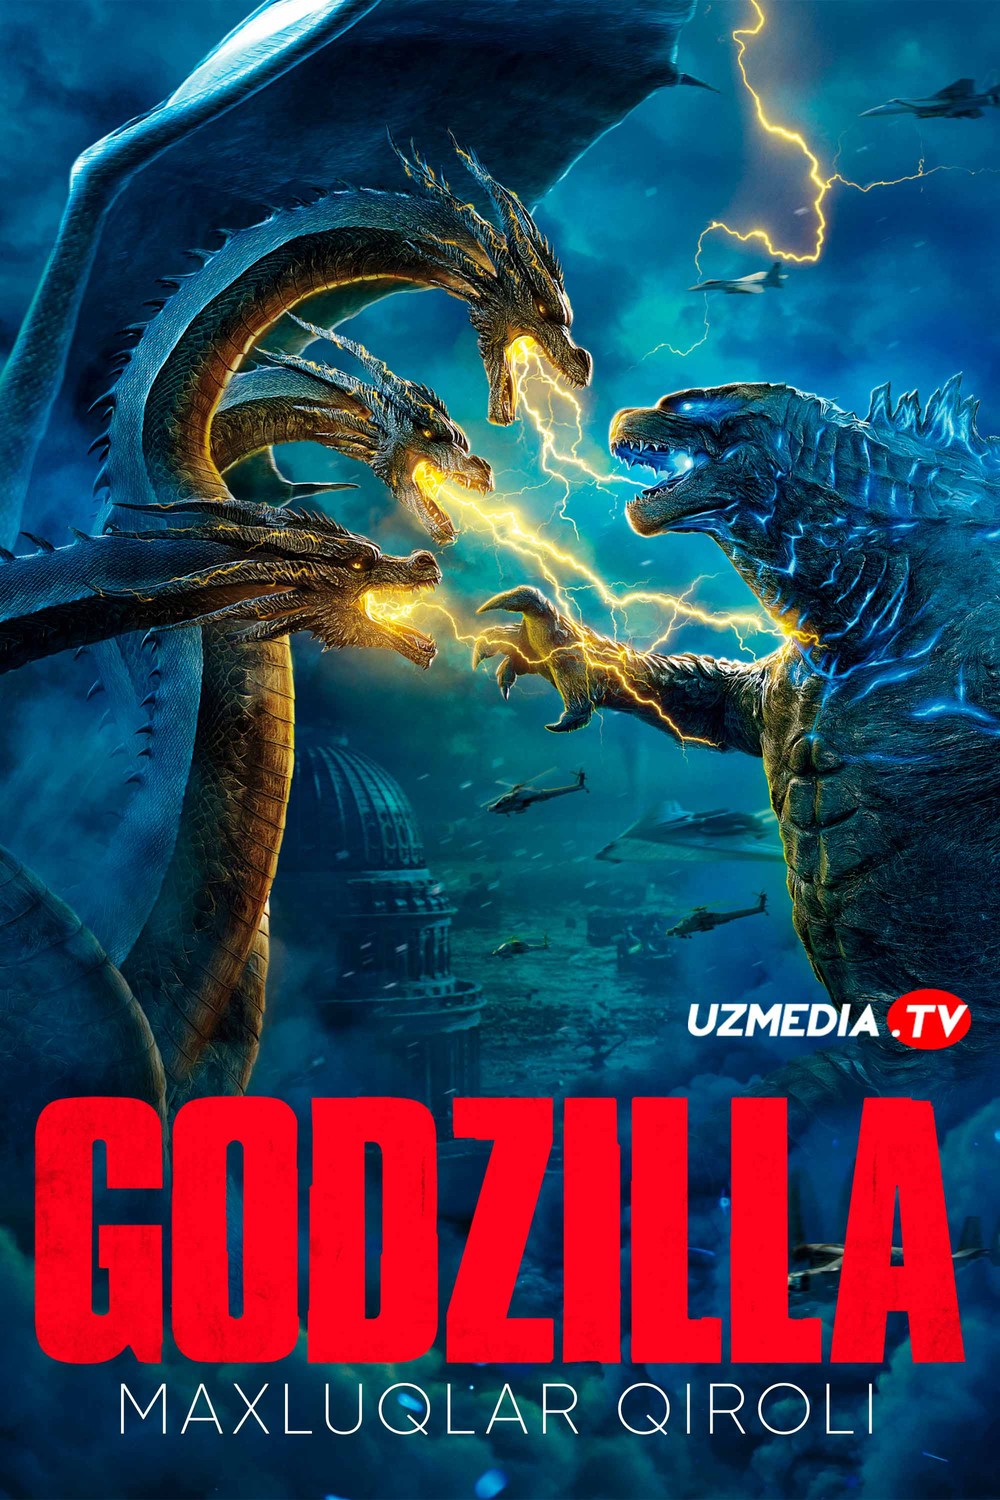 Godzilla 2: Maxluqlar qiroli Uzbek tilida O'zbekcha tarjima kino 2019 Full HD tas-ix skachat